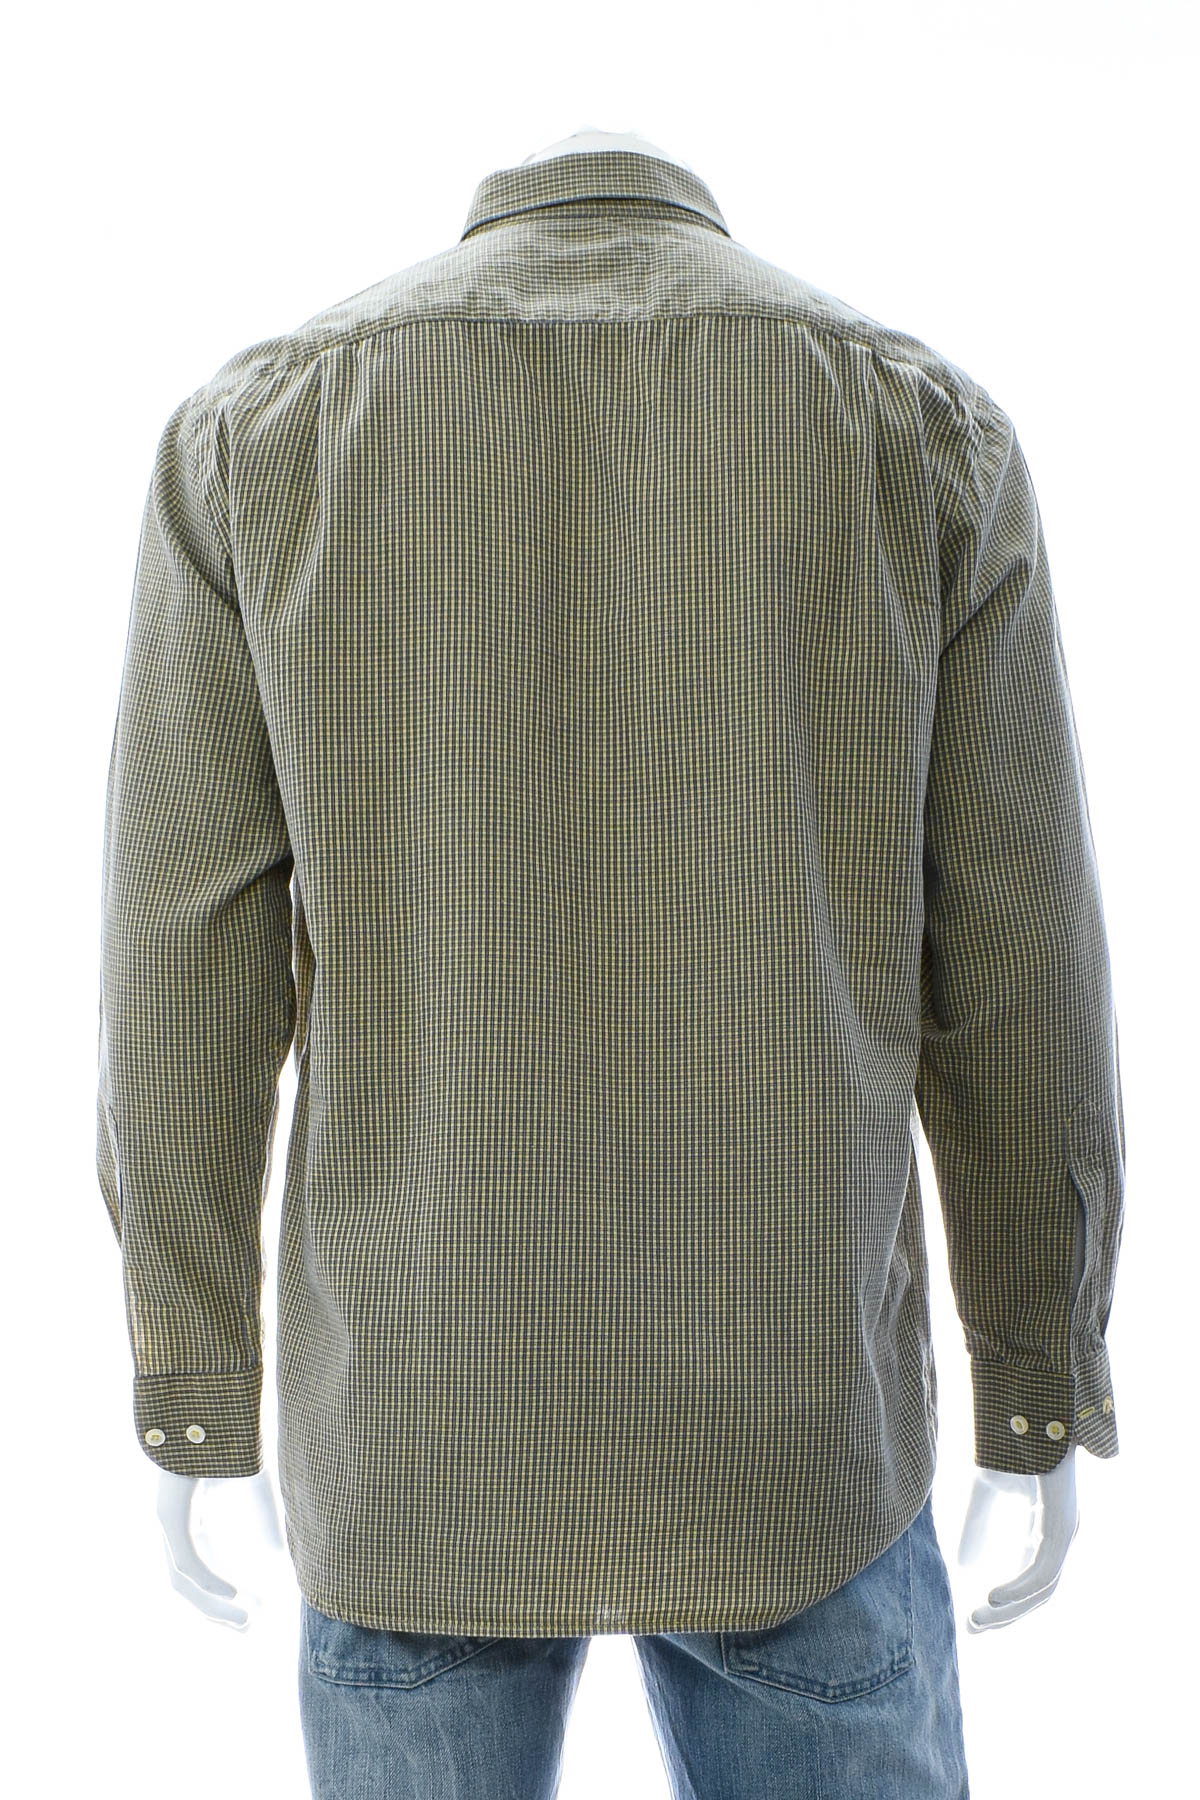 Ανδρικό πουκάμισο - Einhorn - 1